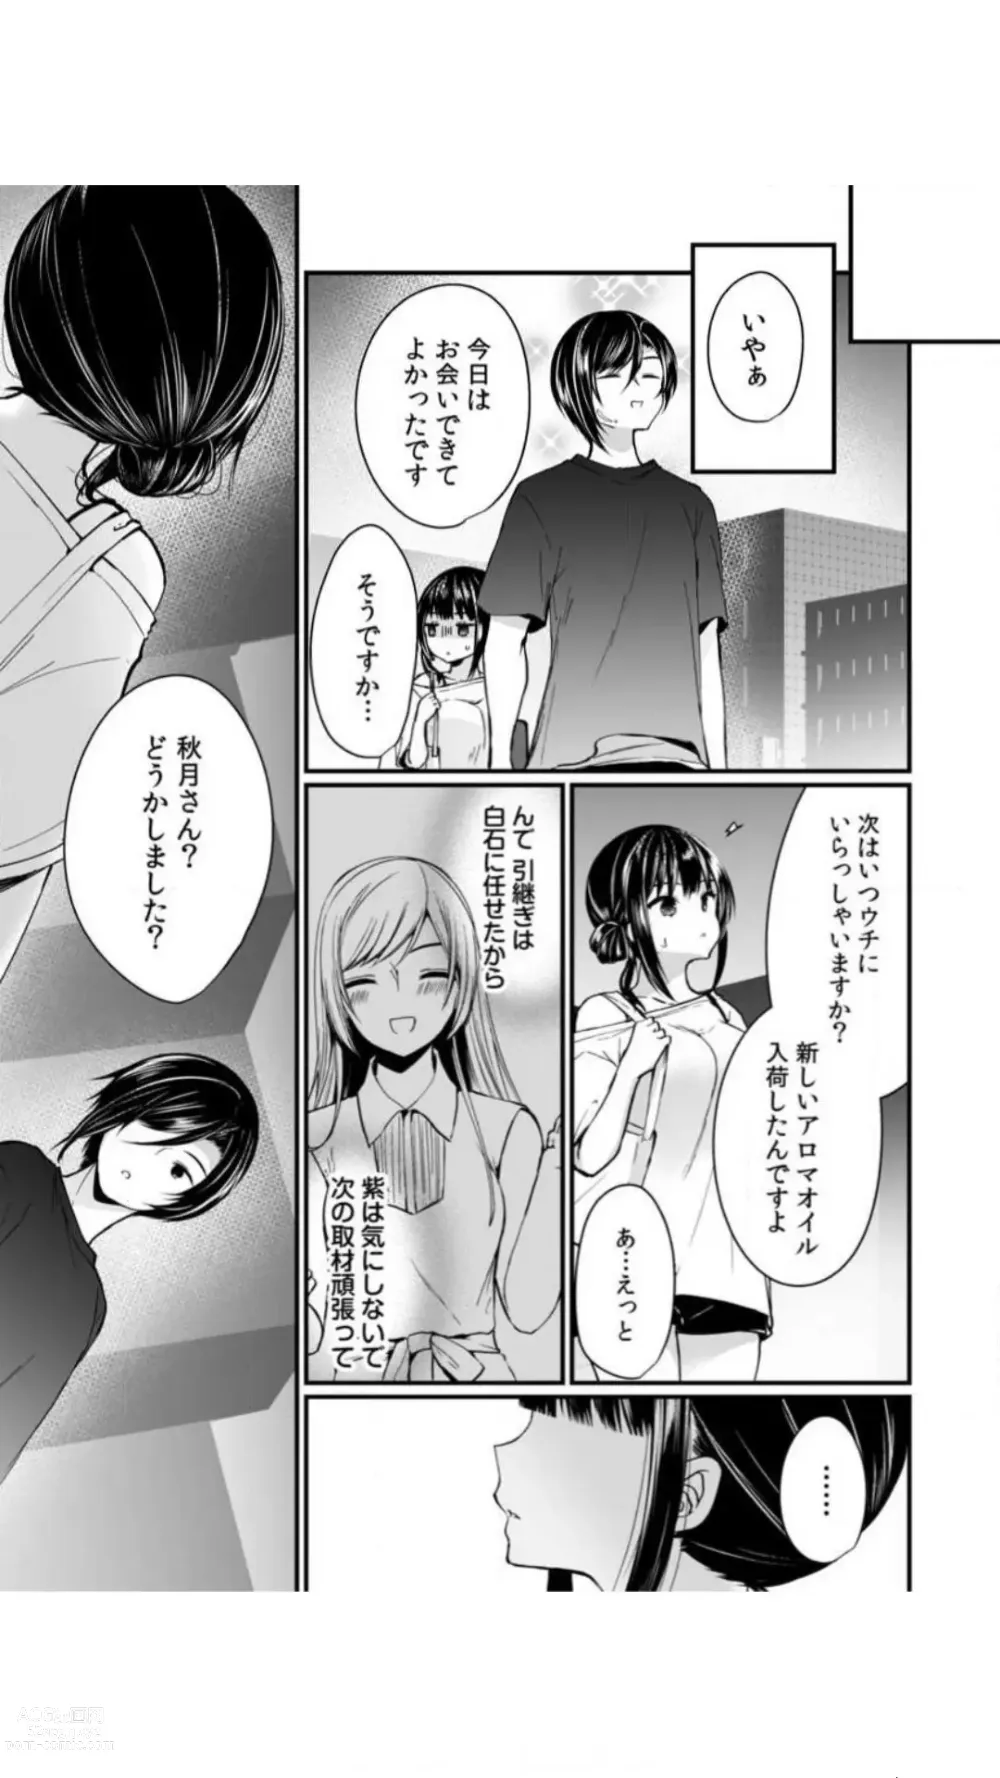 Page 97 of manga Ikasare Sugite Chousa Muri... Sennyuu! Uwasa no Kaikan Massage-ten